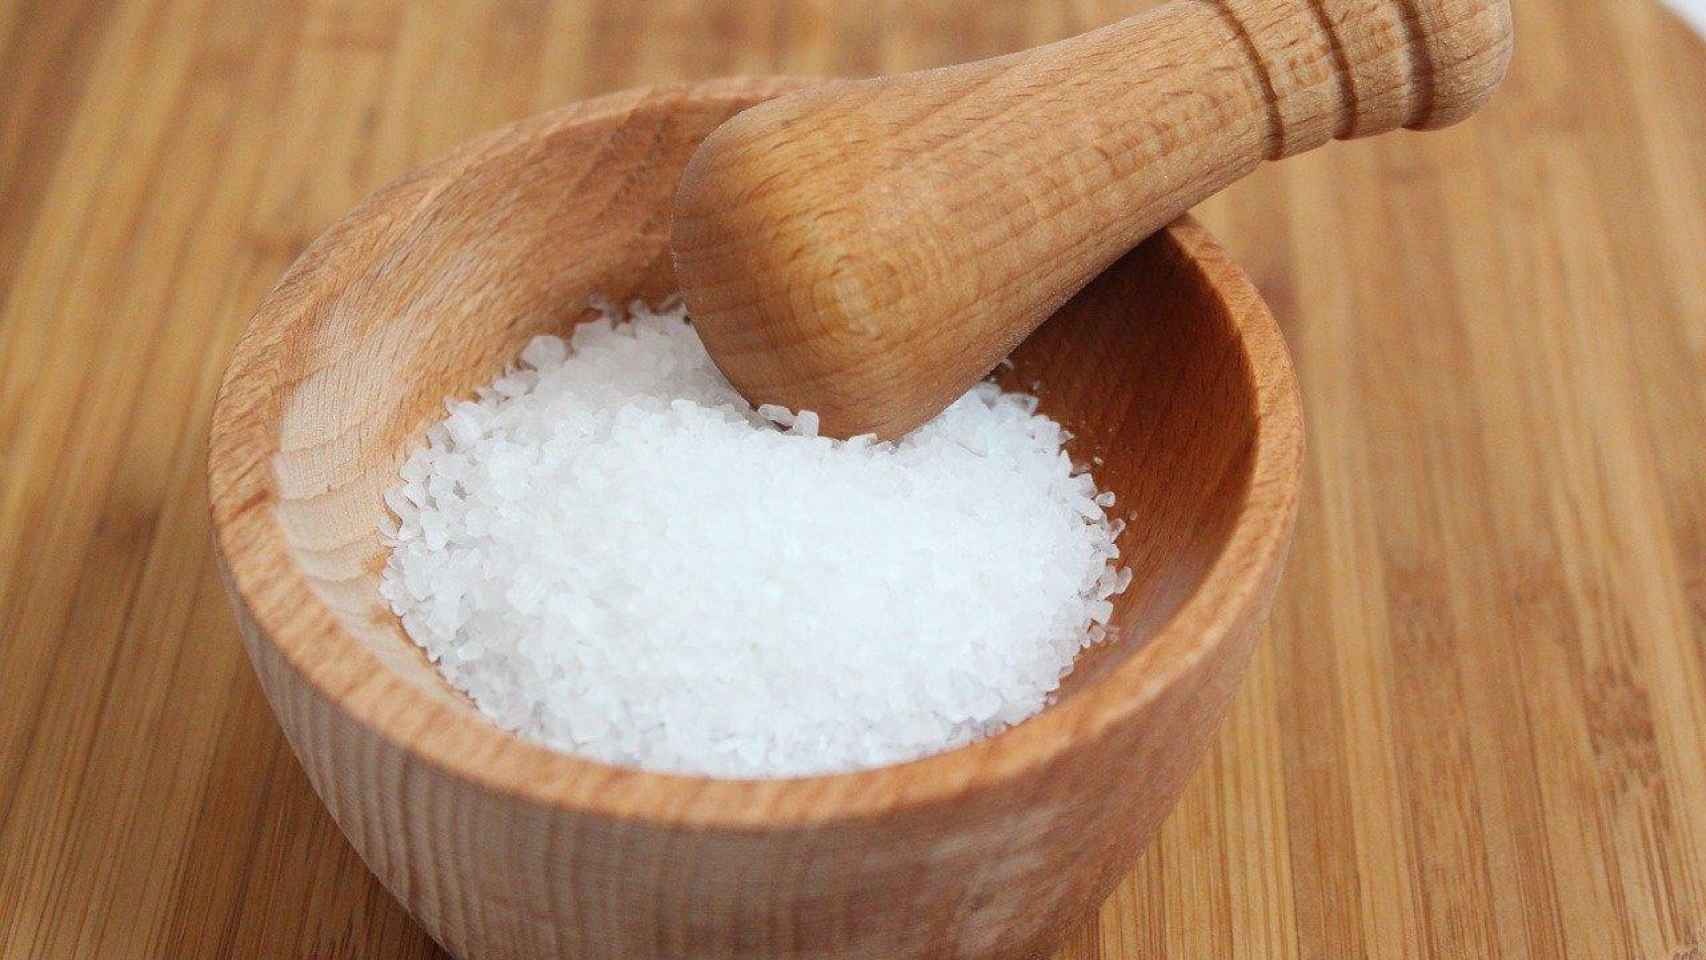 Un bol con sal, el ingrediente que muchos quieren reducir / Philipp Kleindienst - Pixabay